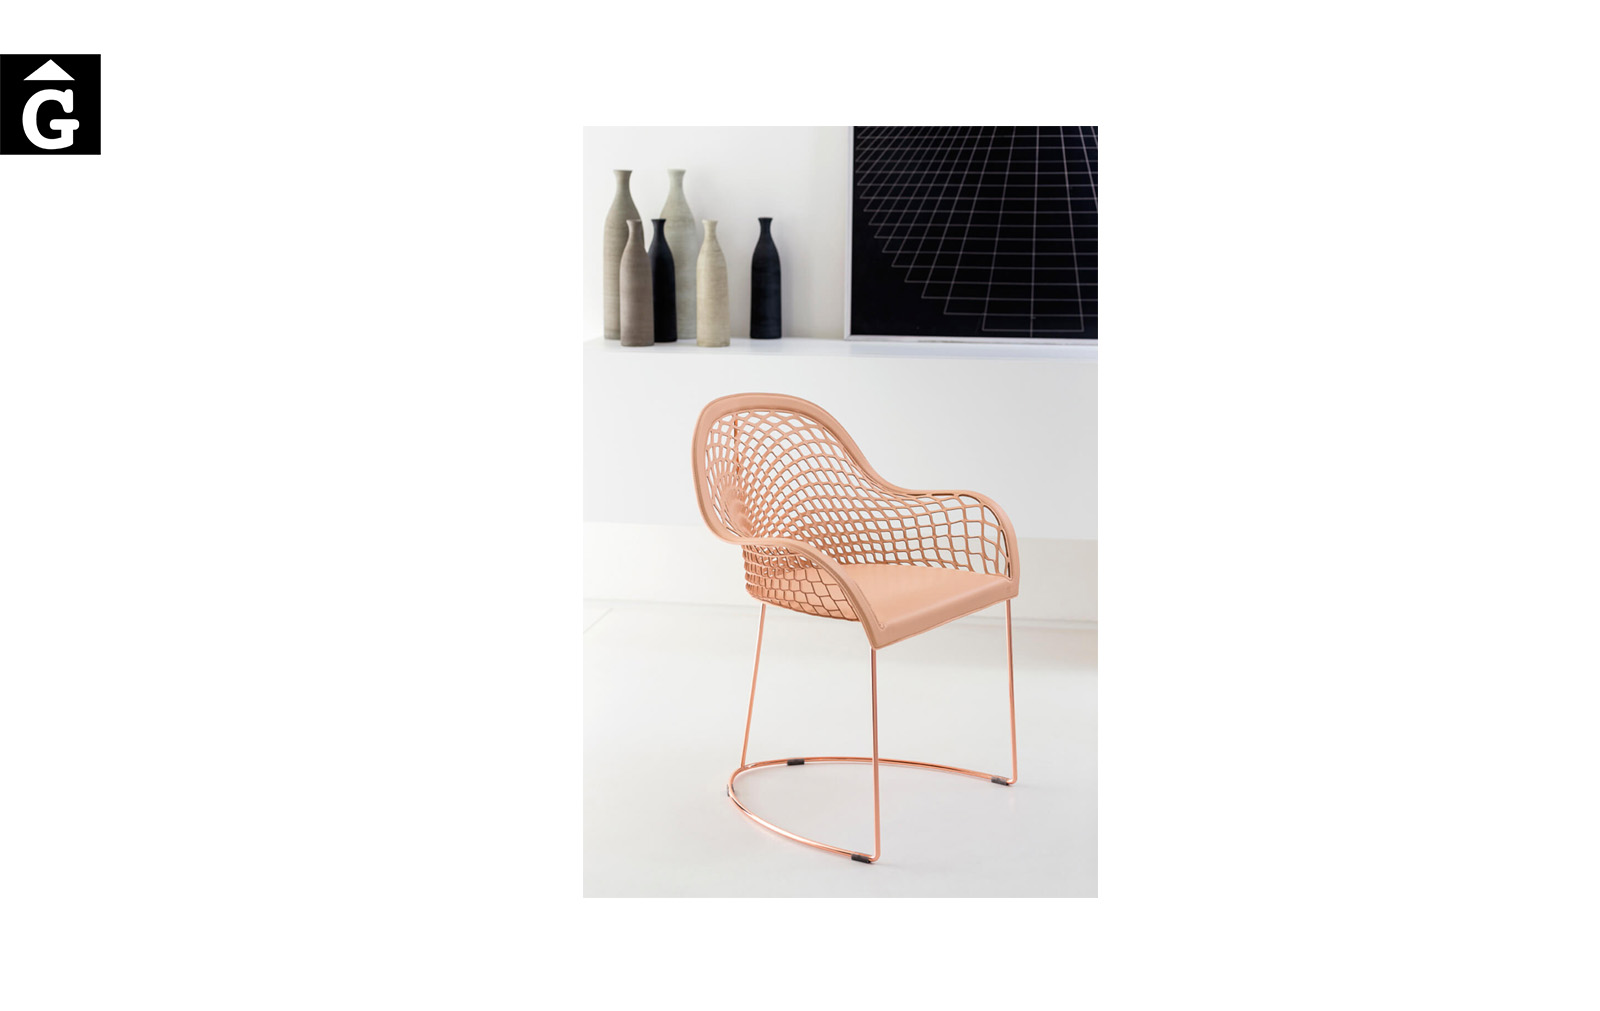 Cadira amb braços Guapa P M CU de MIDJ |Taules i cadires de disseny actual | modern i conservador| casual i elegant | mobles Gifreu | Productes de qualitat